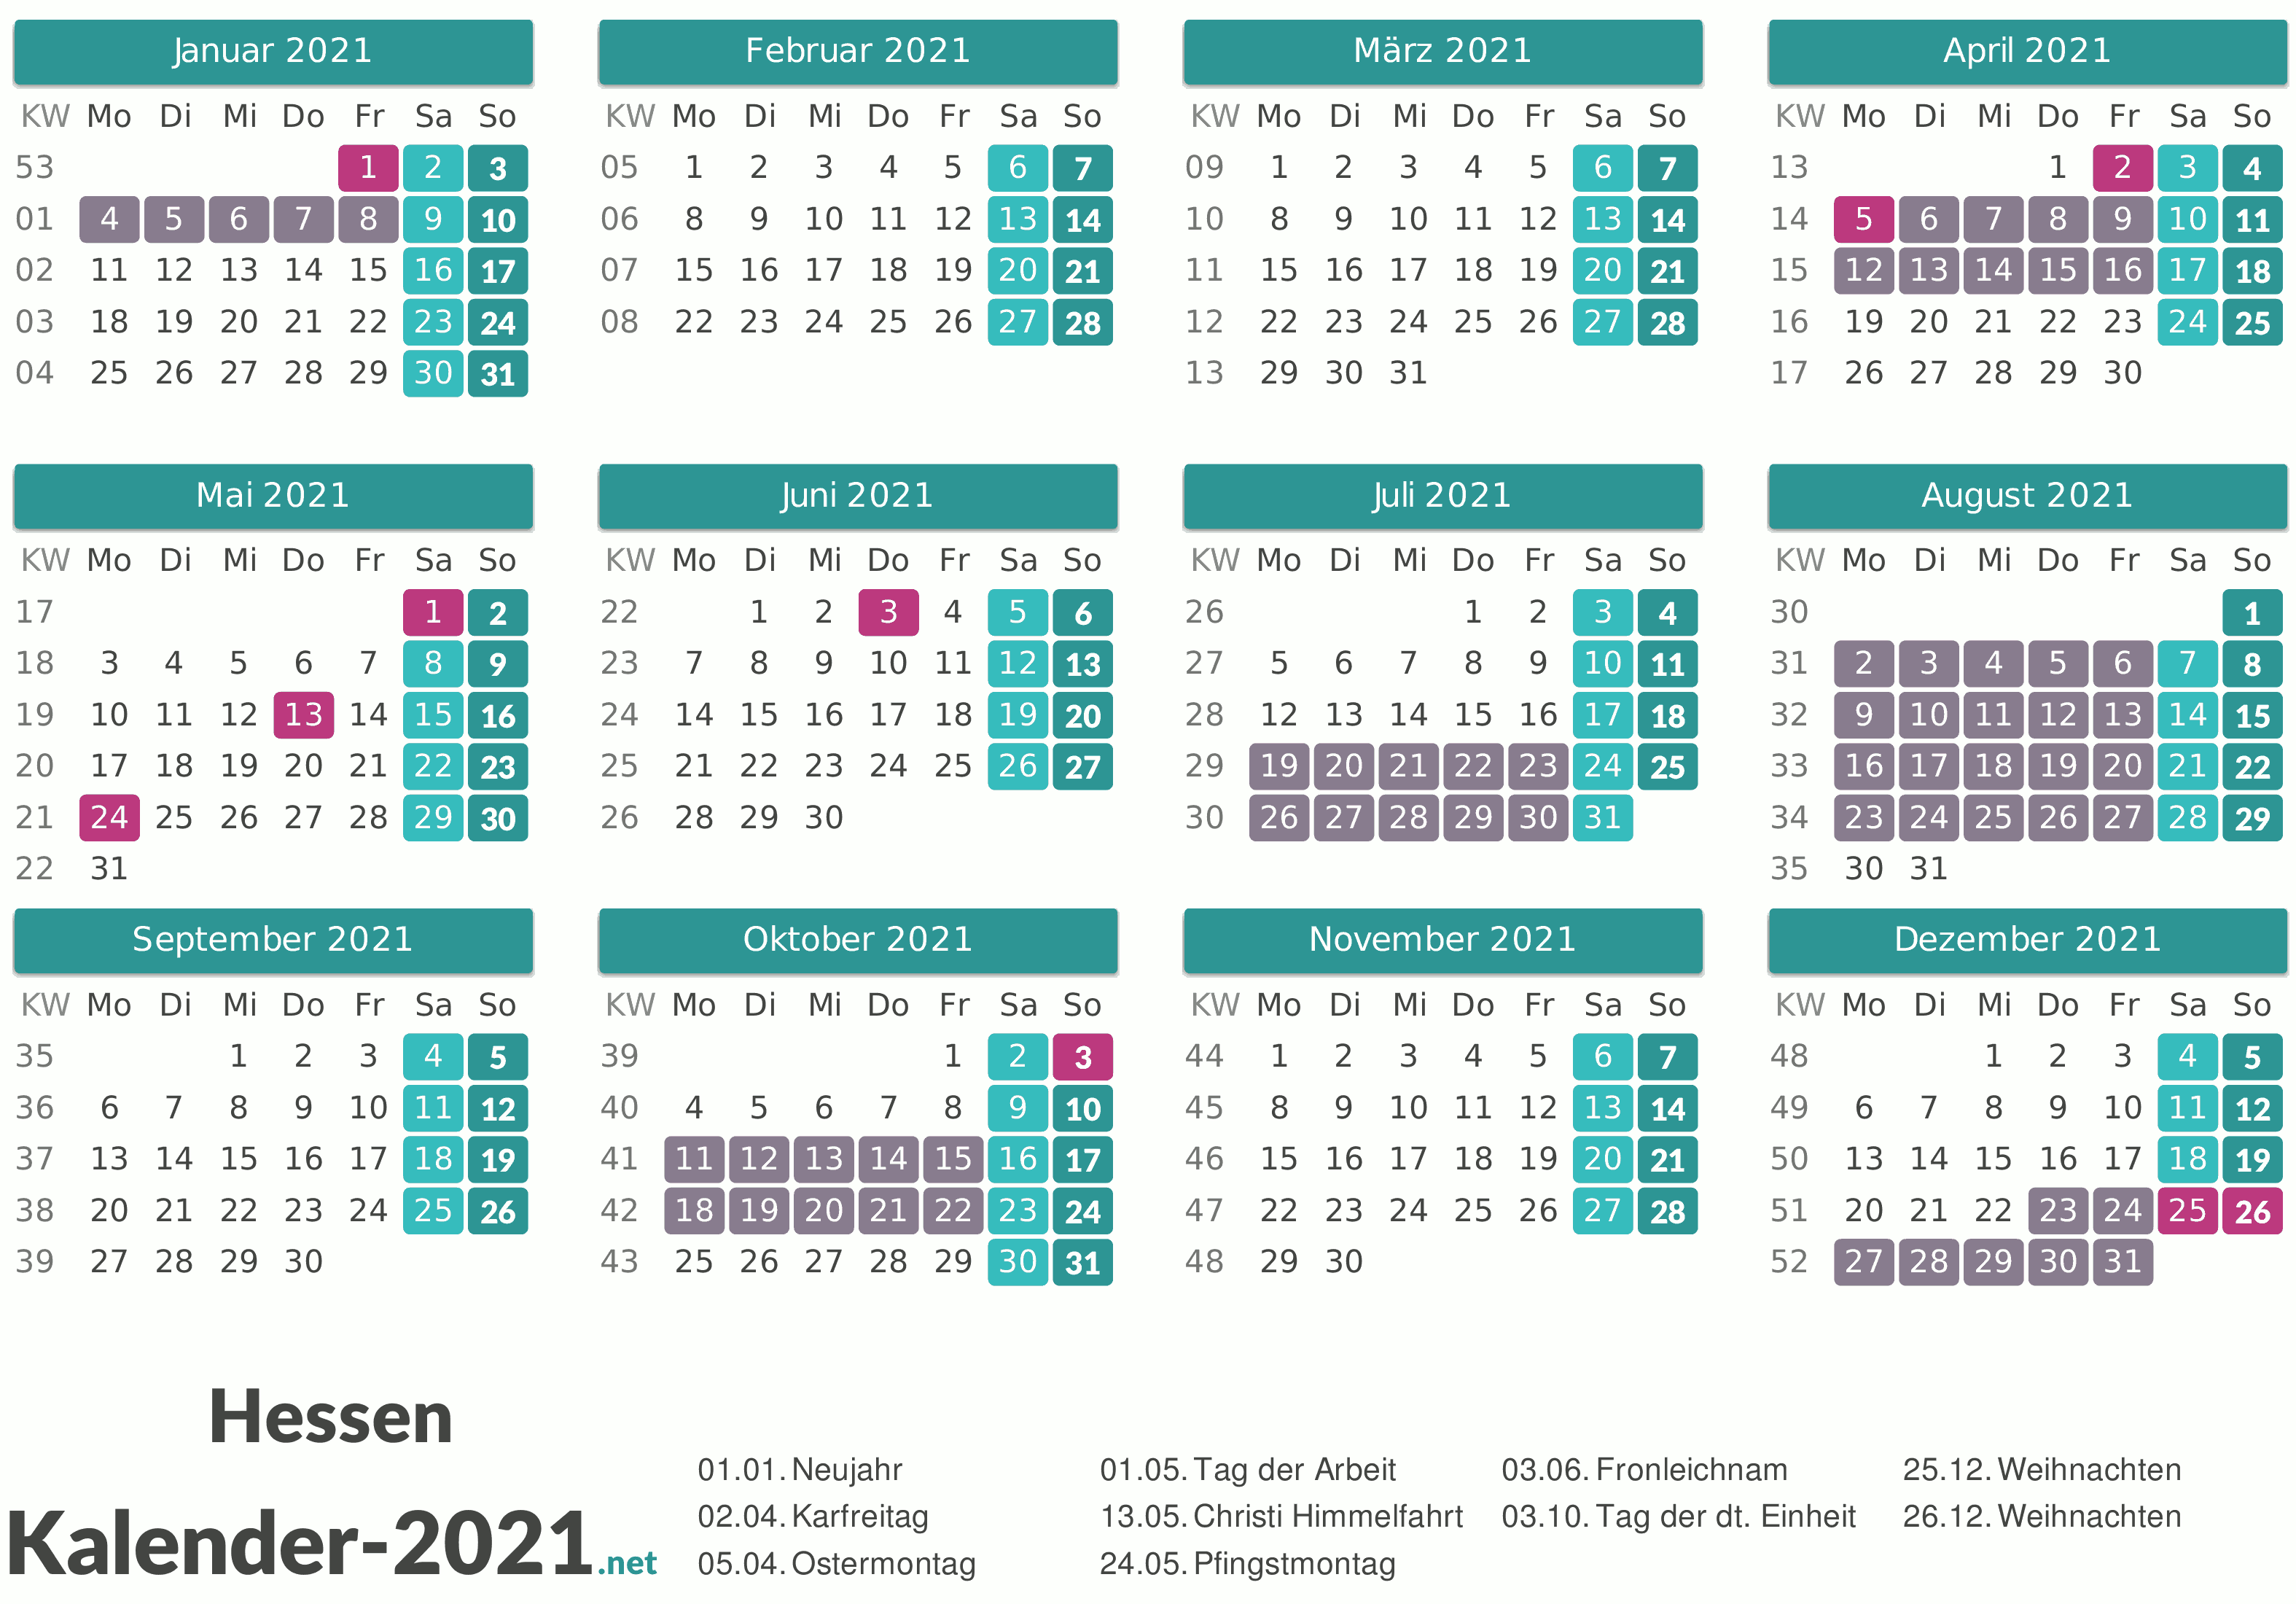 FERIEN Hessen 2021 - Ferienkalender & Übersicht